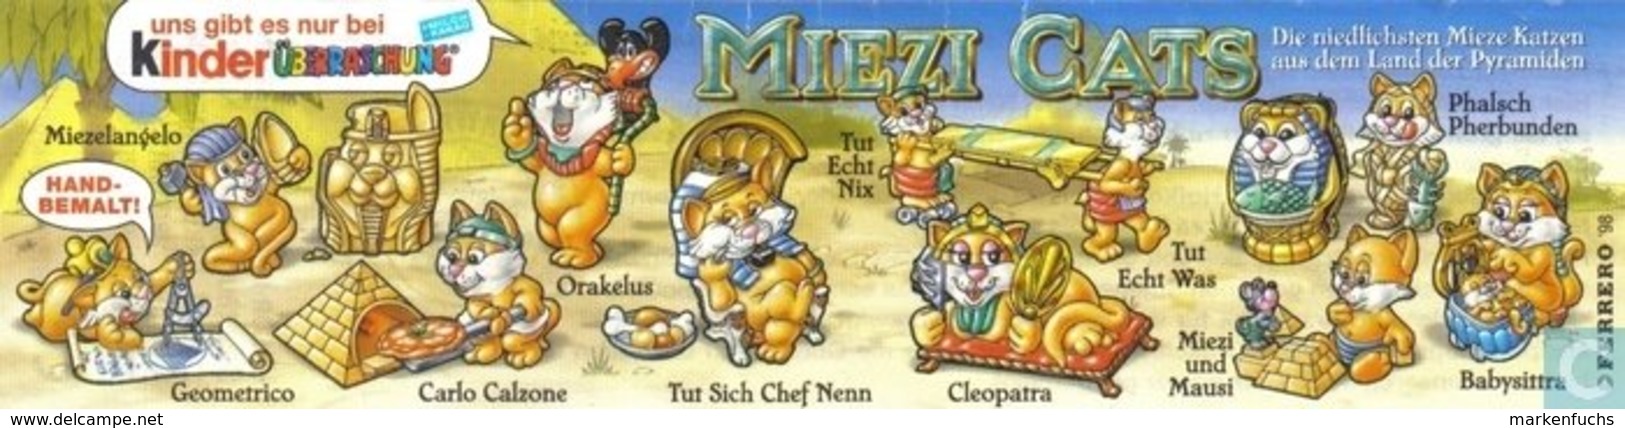 Miezi Cats 1998 / Tut Sich Chef Nenn + BPZ - Ü-Ei